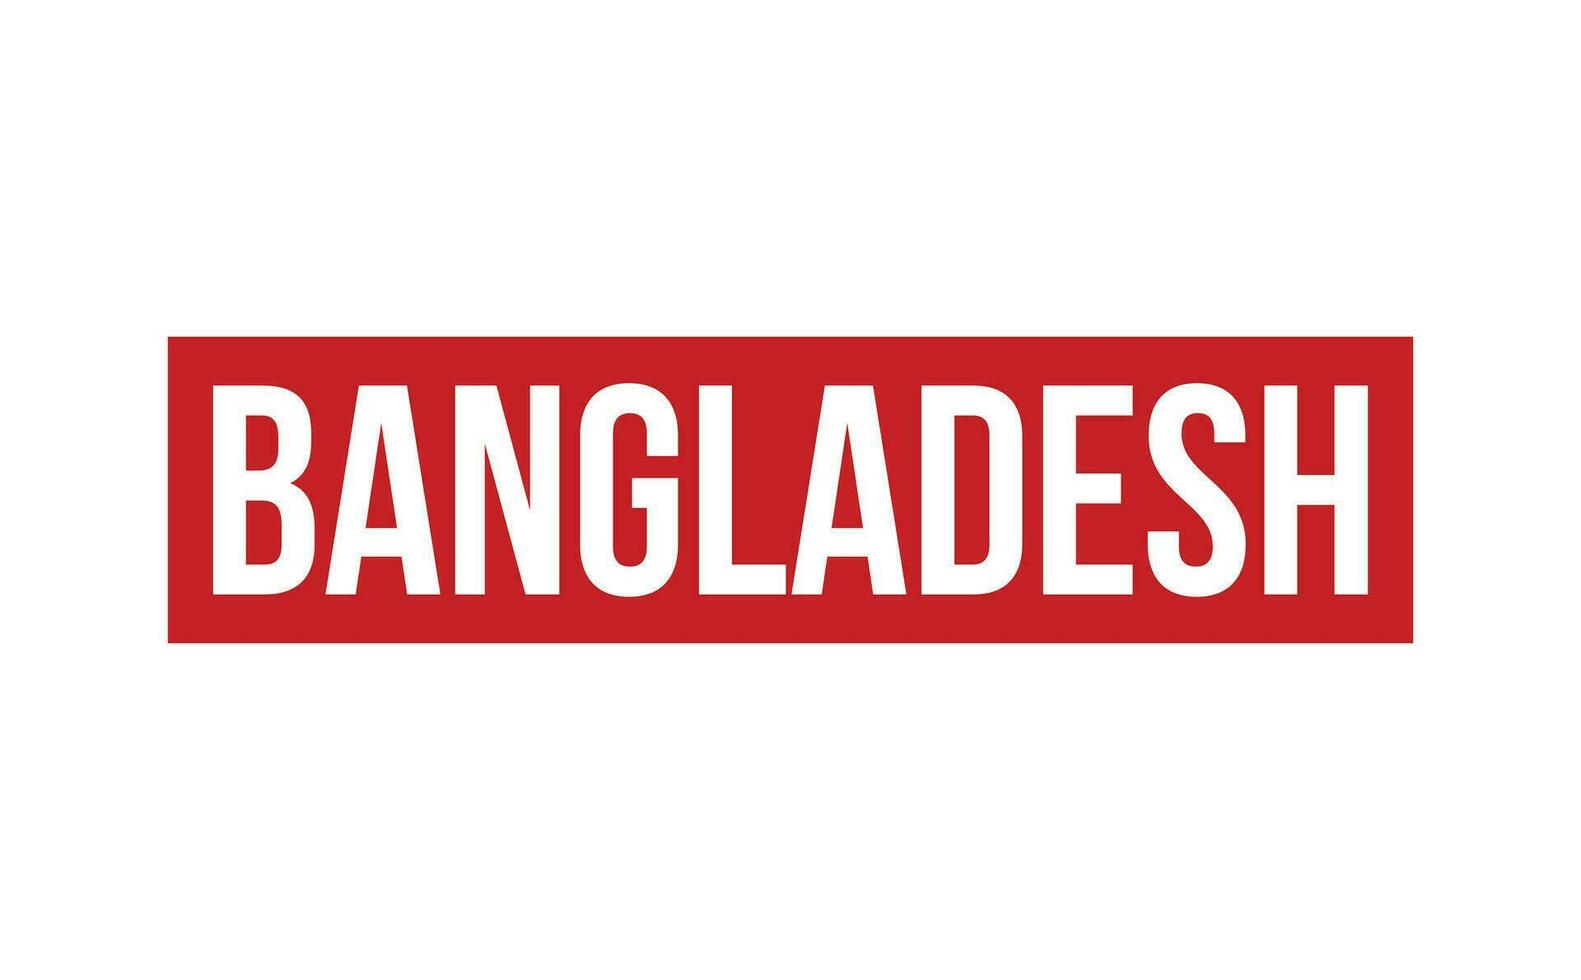 Bangladesh borracha carimbo foca vetor